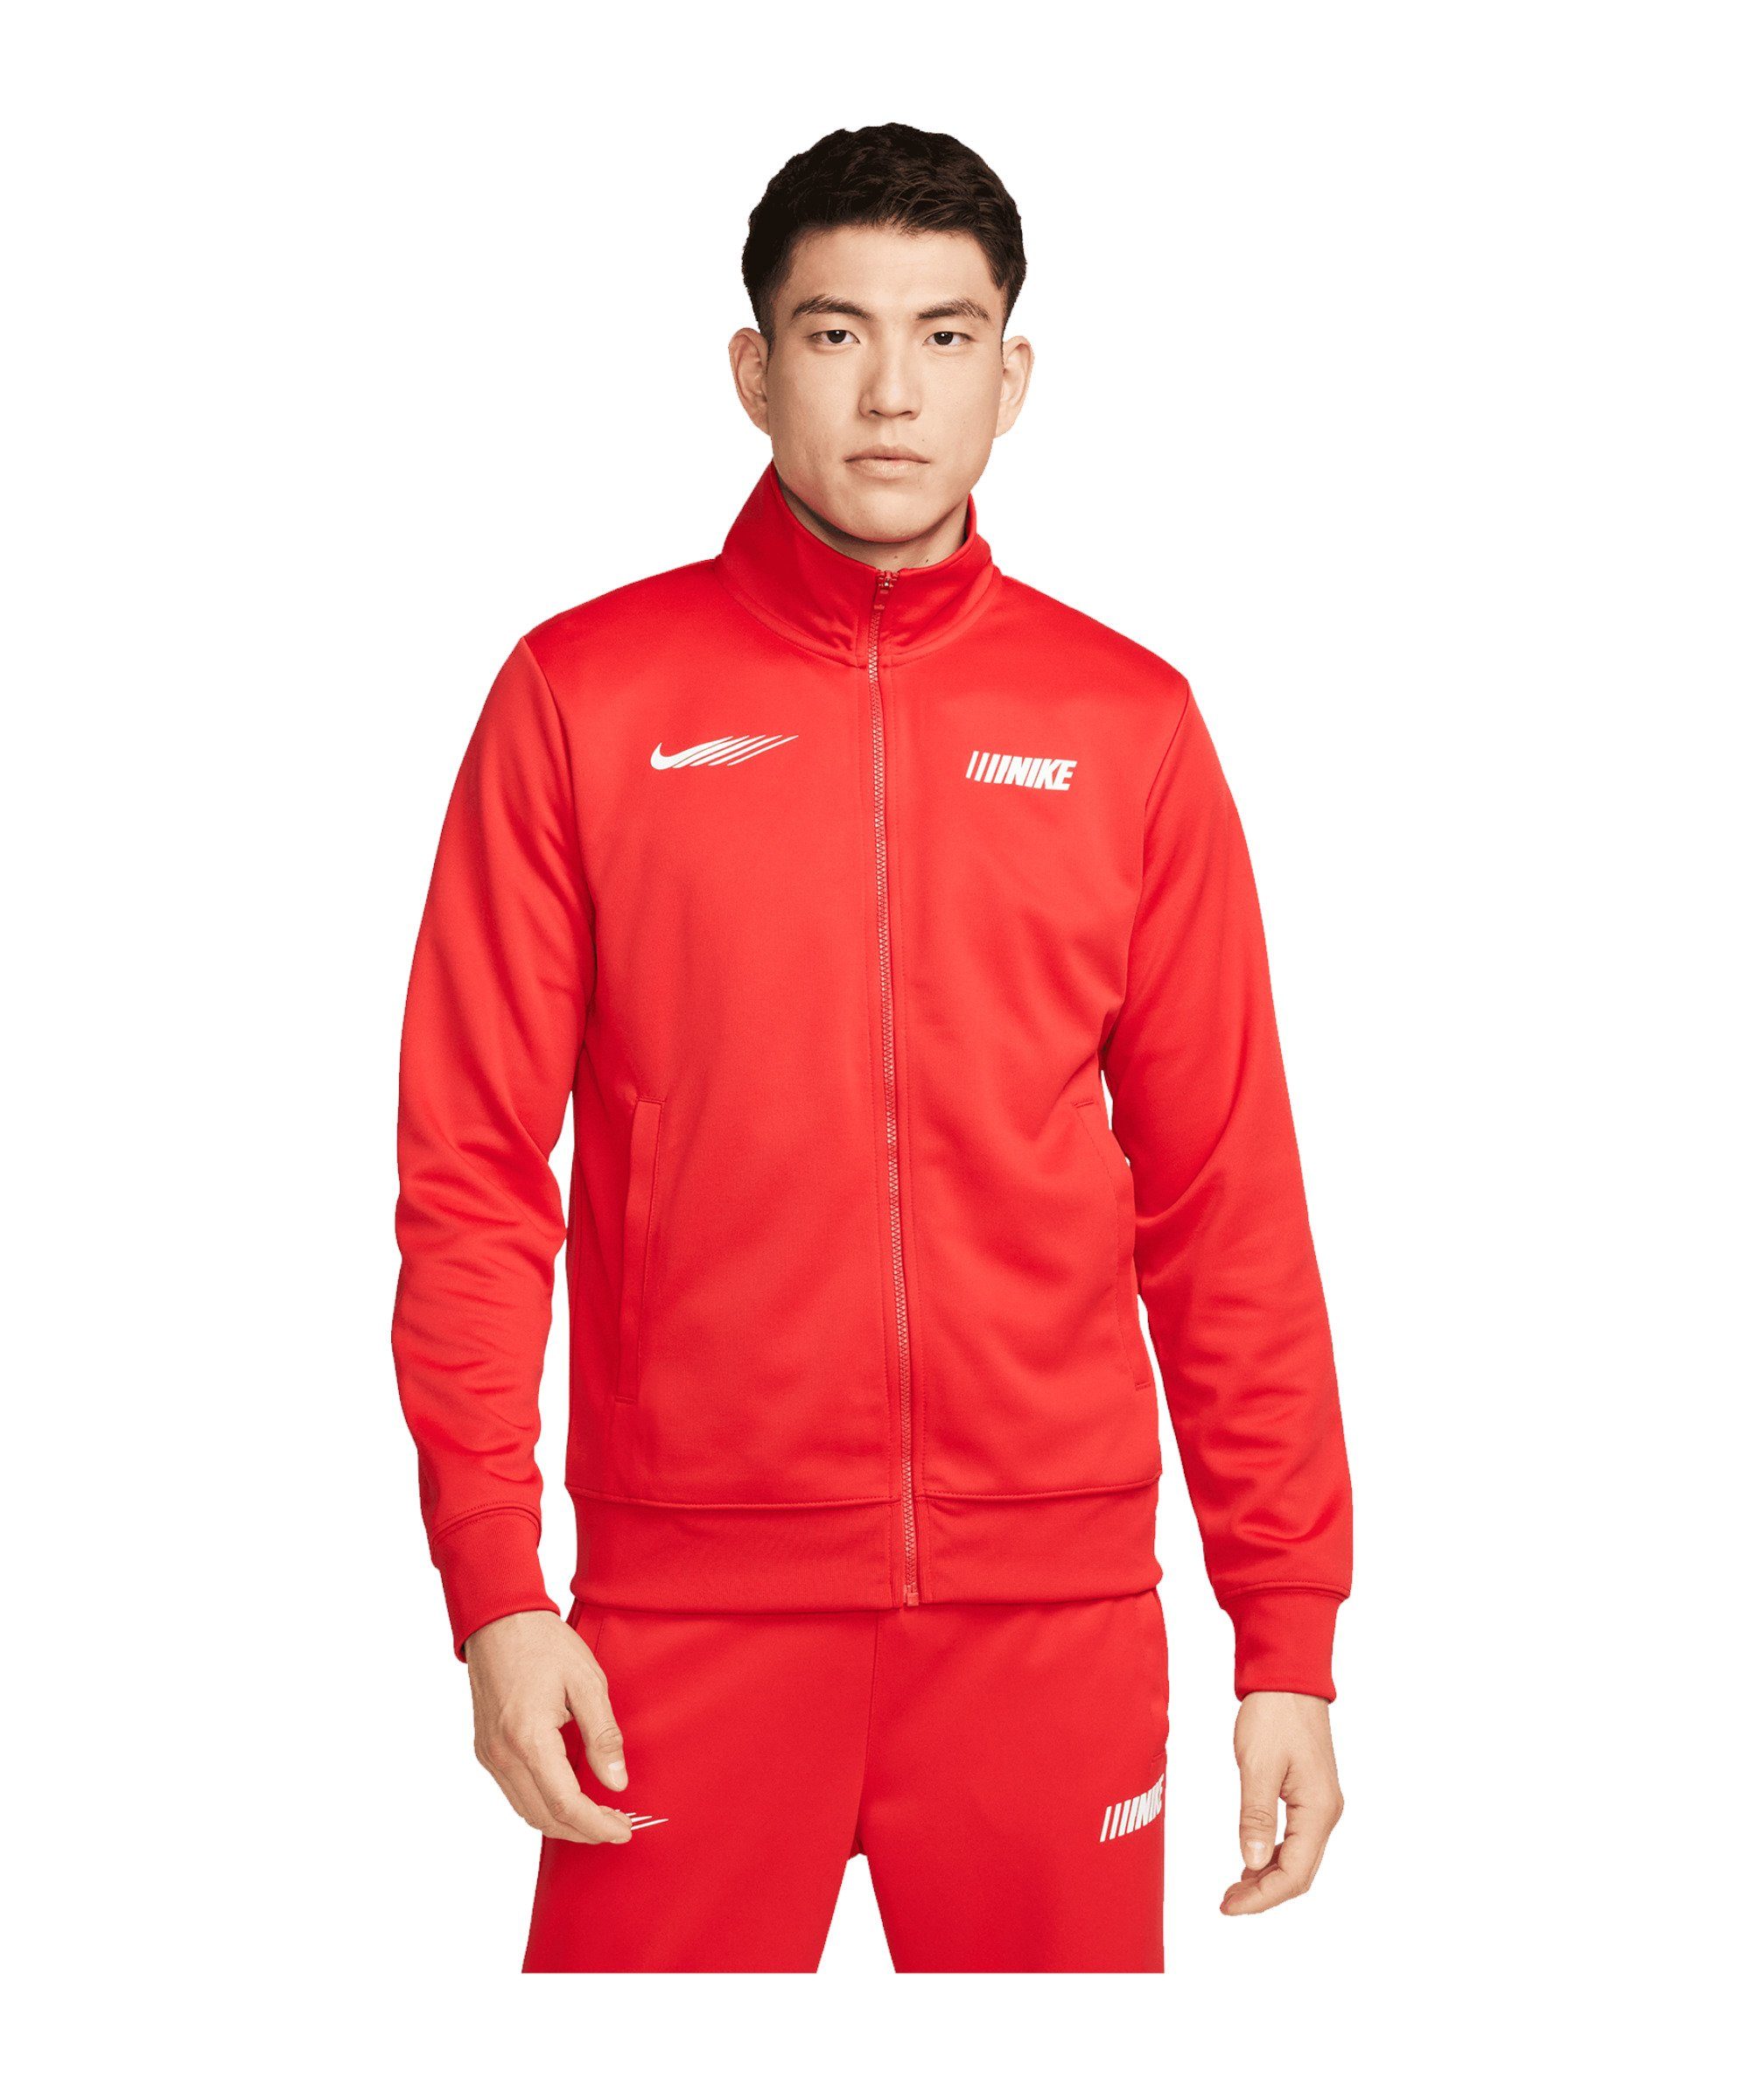 Nike Sportswear Sweatjacke Standart Issue Jacke rot | Jacken